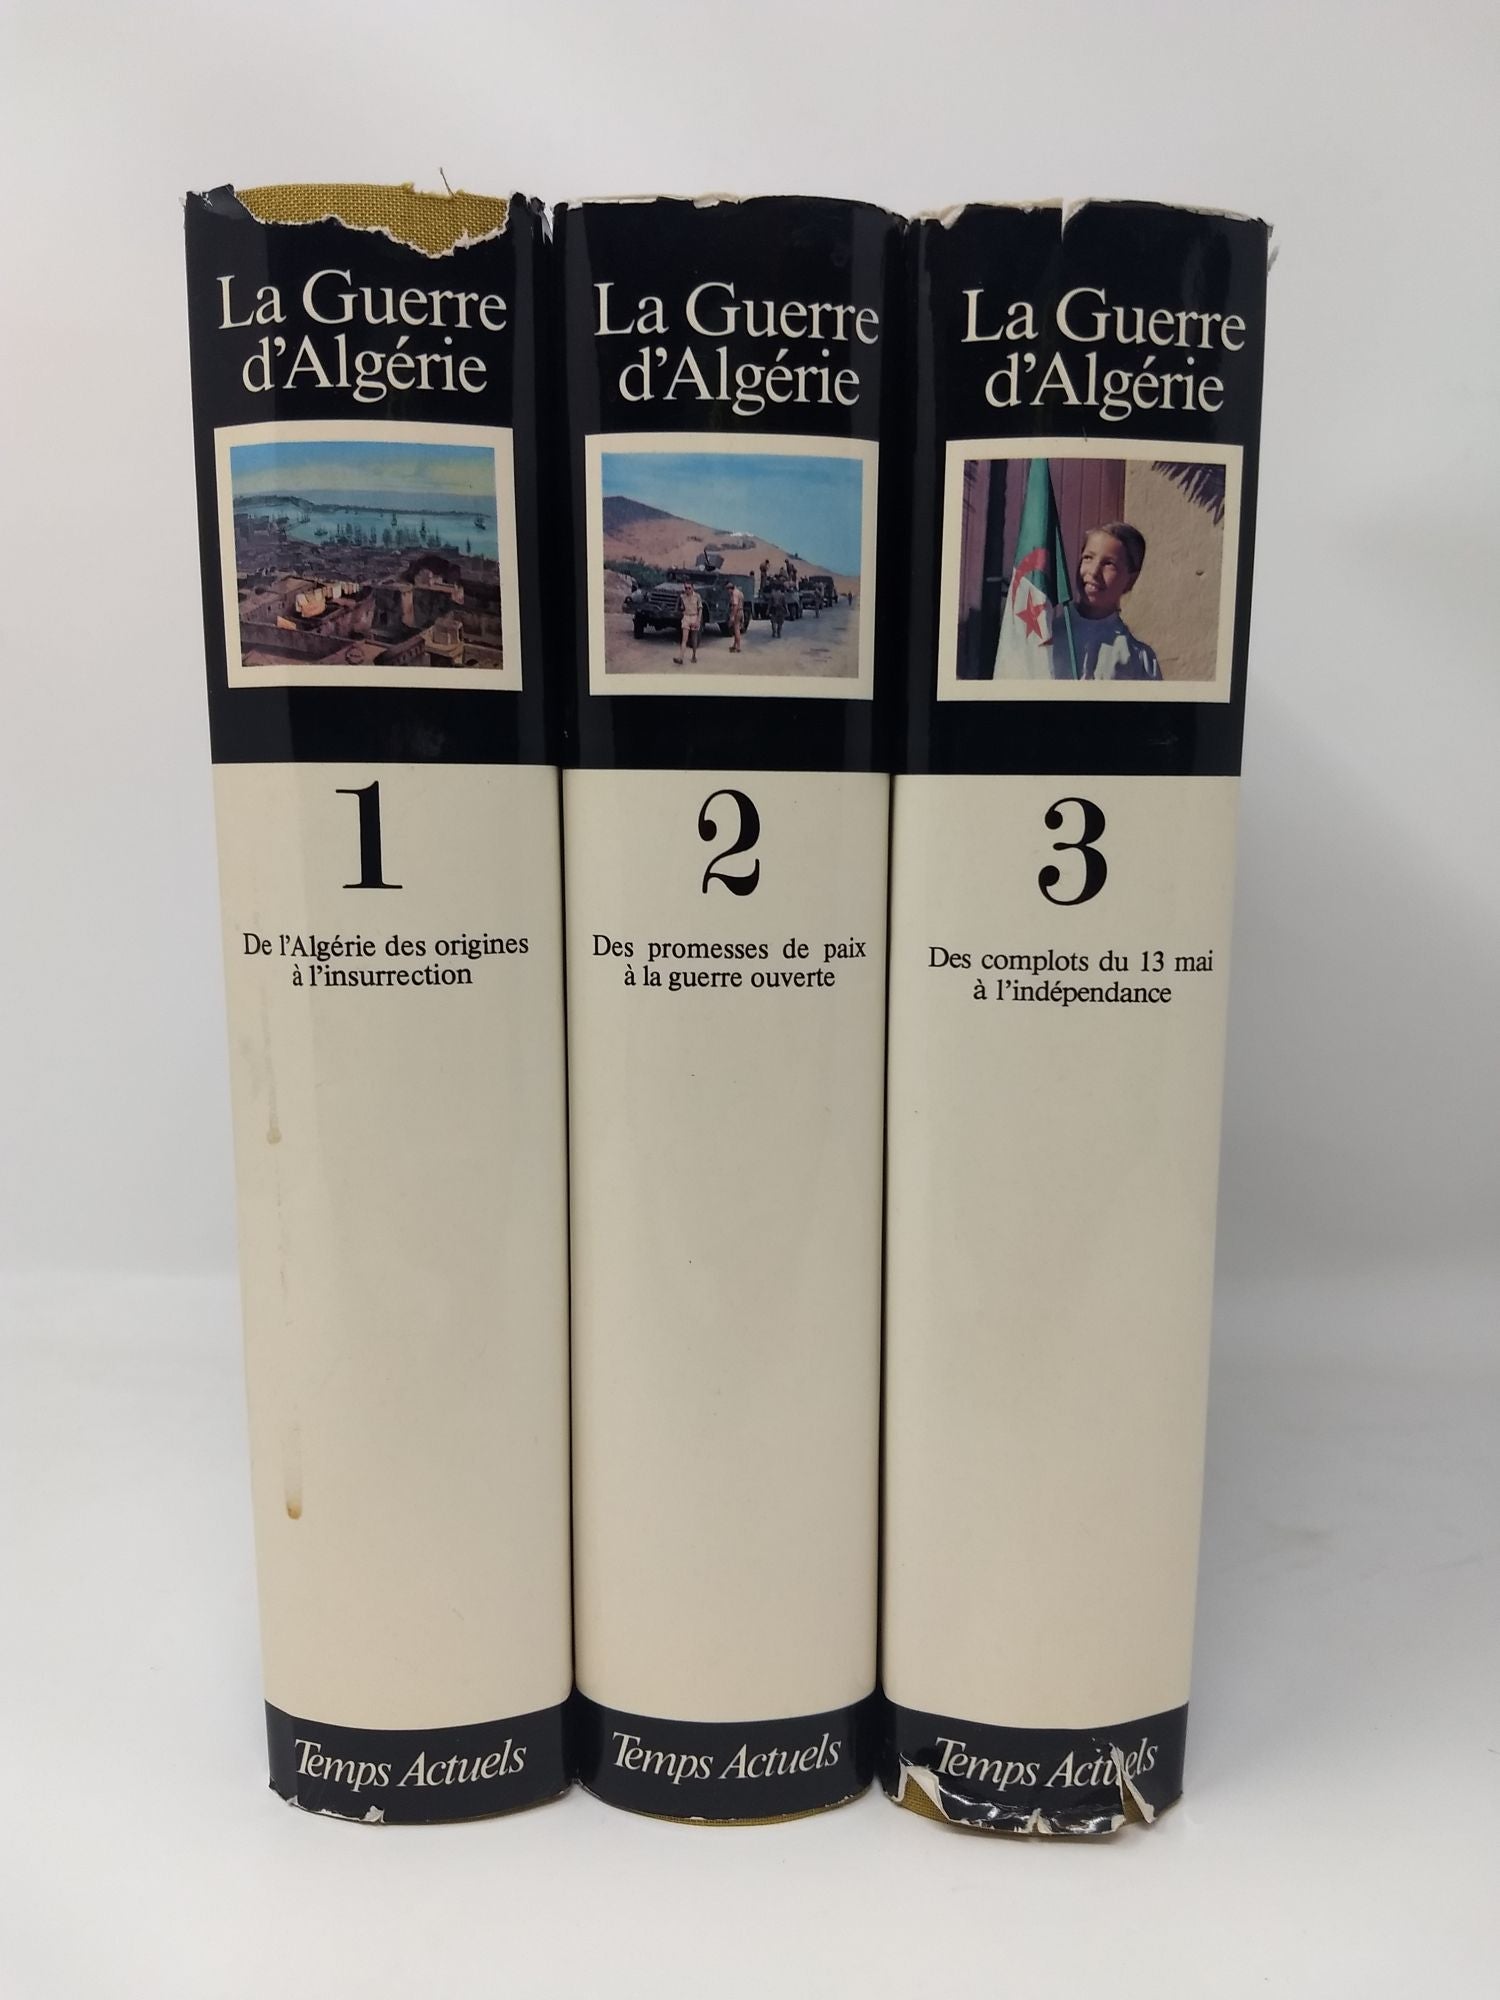 Alleg, Henri, Jacques de Bonis, Henri J. Douzon, Jean Freire, Pierre Haudiquet (Editors) - La Guerre D' Algerie : Trois Volumes (Sign)